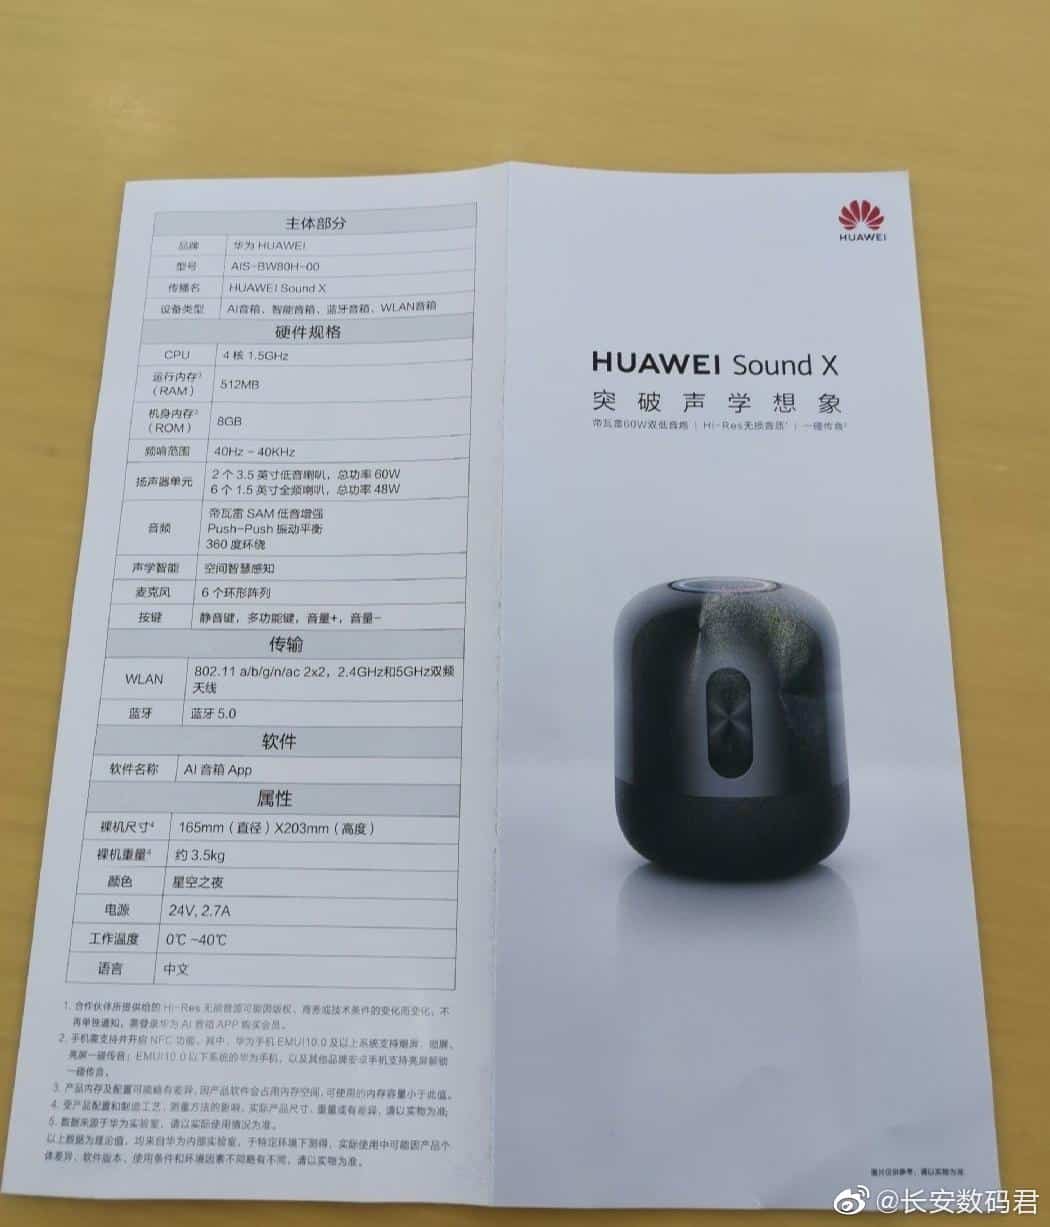 Huawei Sound X smart speaker leak 1